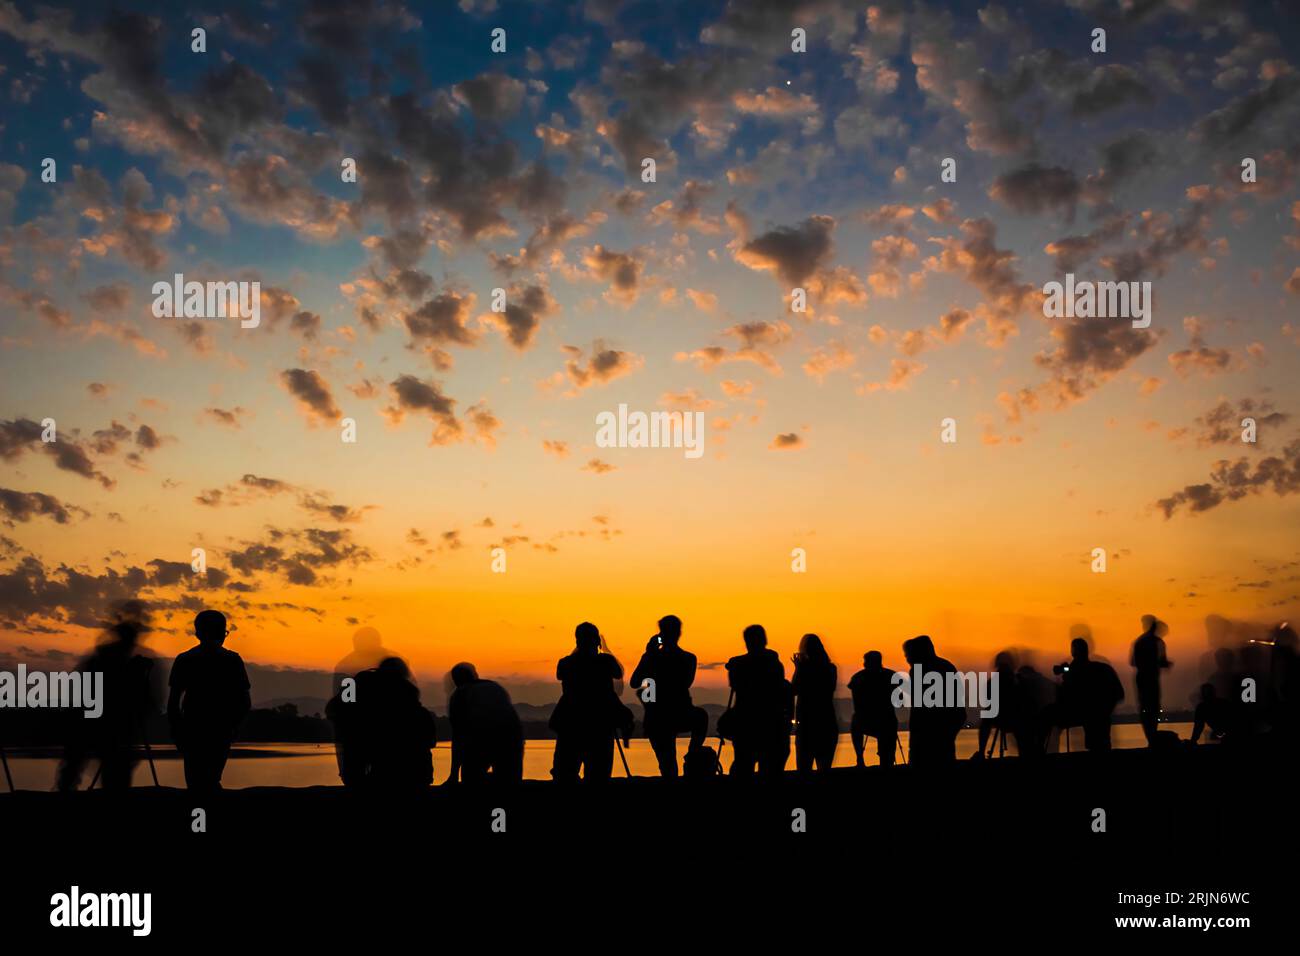 Ein Langzeitbelichtungsbild eines lebhaften Sonnenuntergangs beleuchtet eine ruhige Landschaft mit einer Gruppe von Menschen, die am Horizont silhouettiert sind Stockfoto